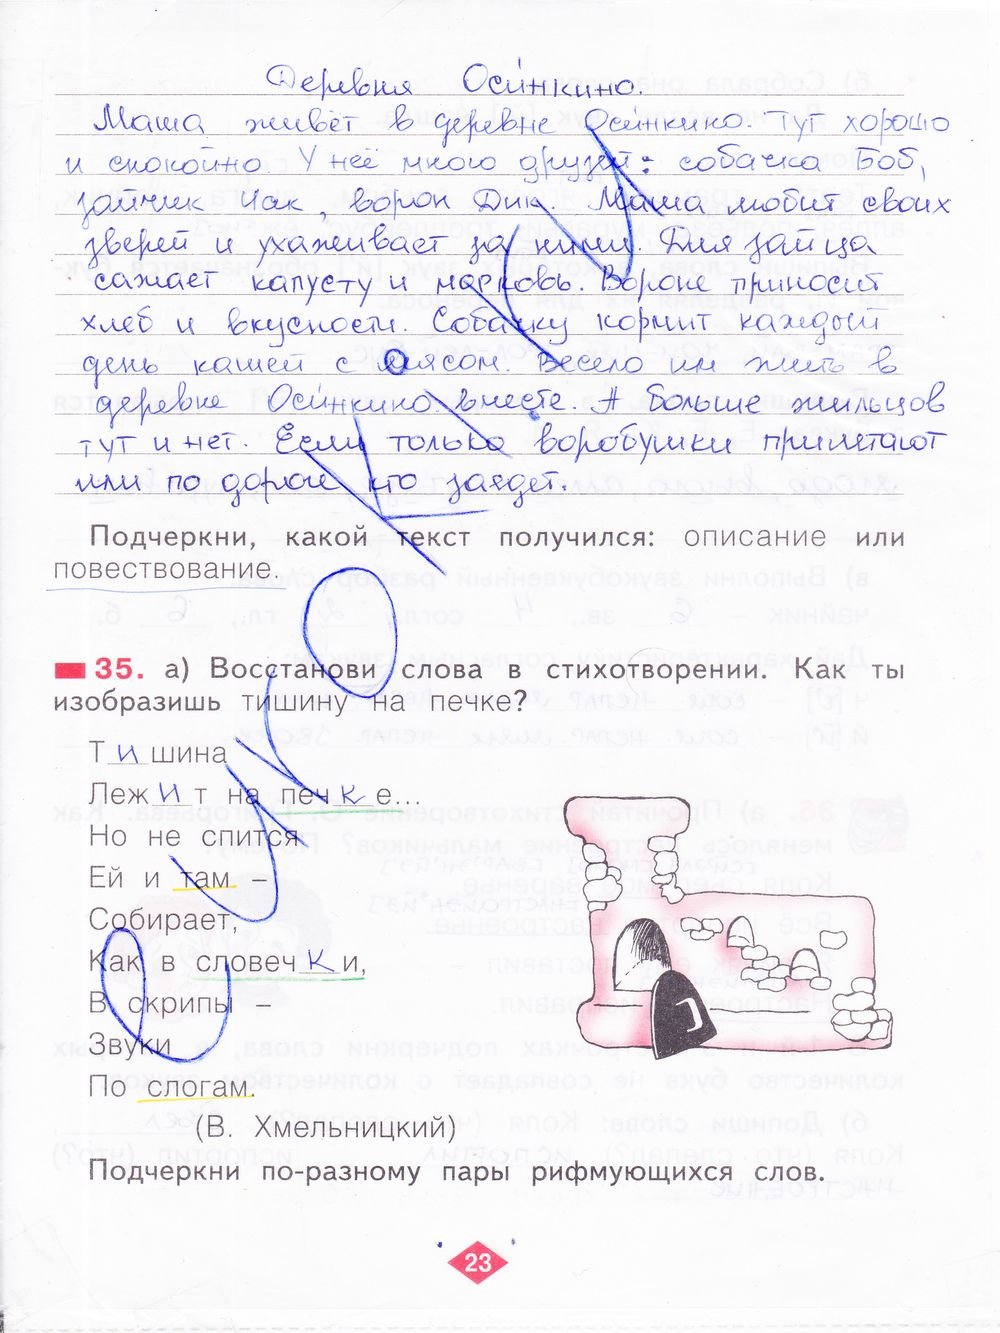 ГДЗ Русский язык 2 класс - стр. 23